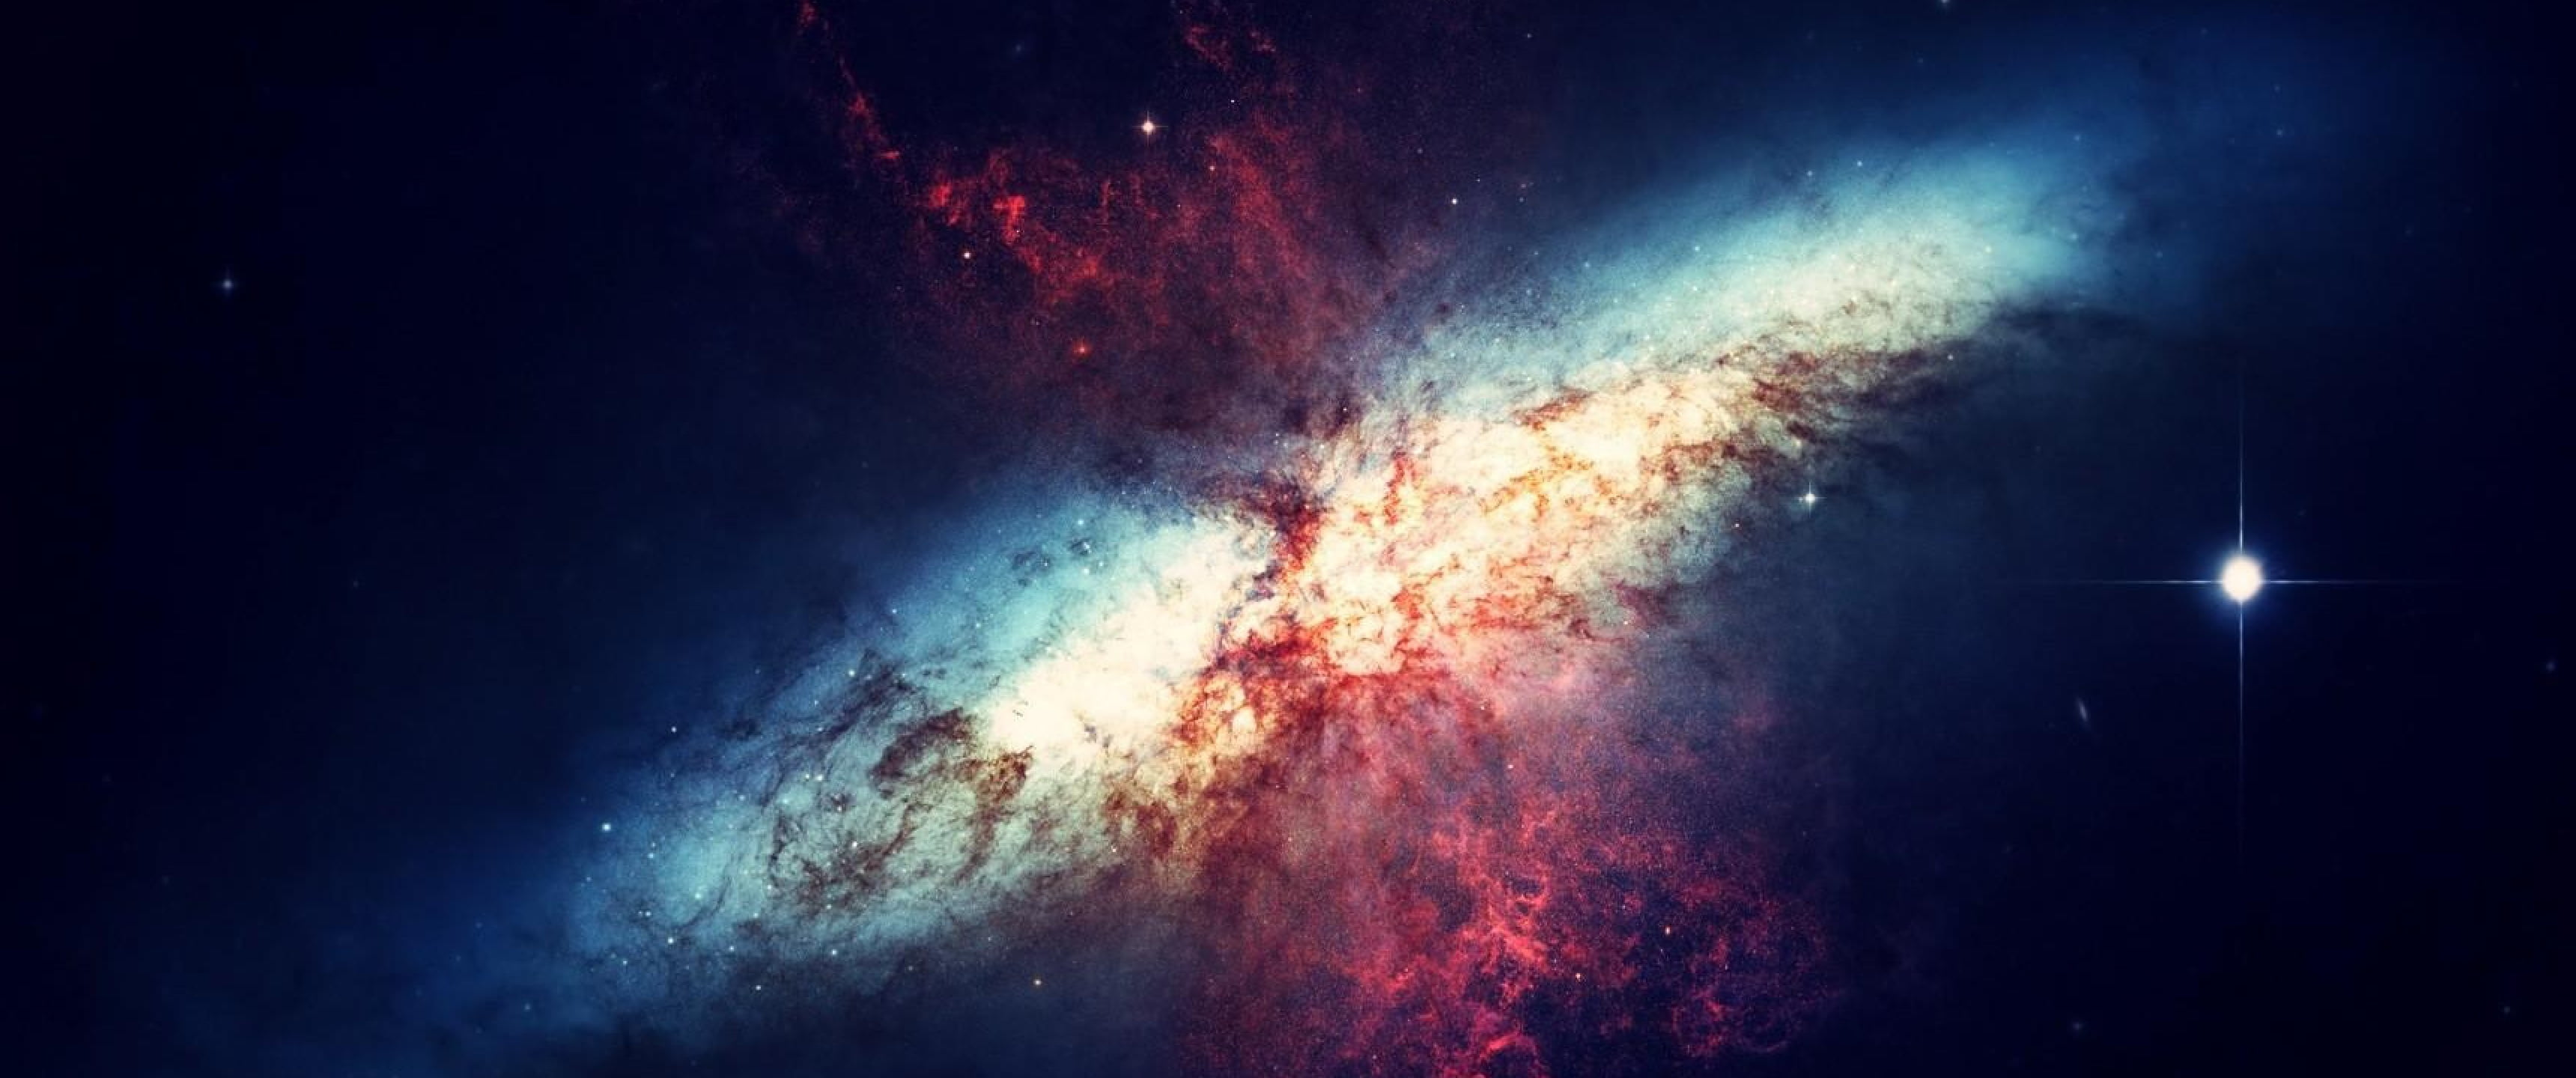 helix nebula, galaxy, Messier 82, smoke - physical structure